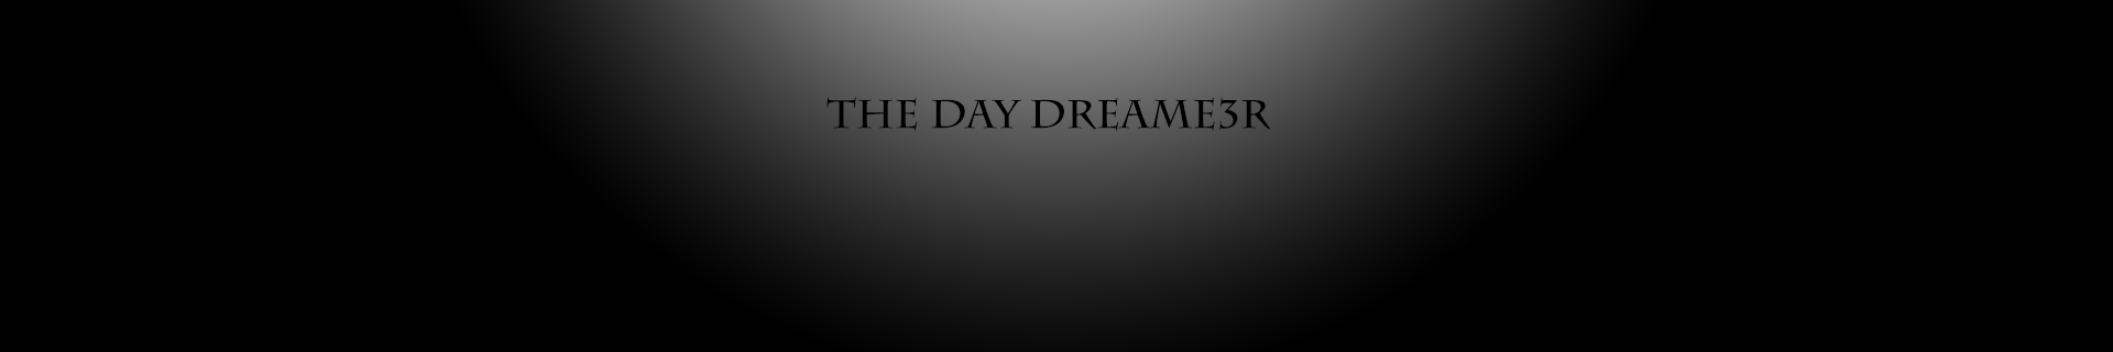 The Day Dream3r